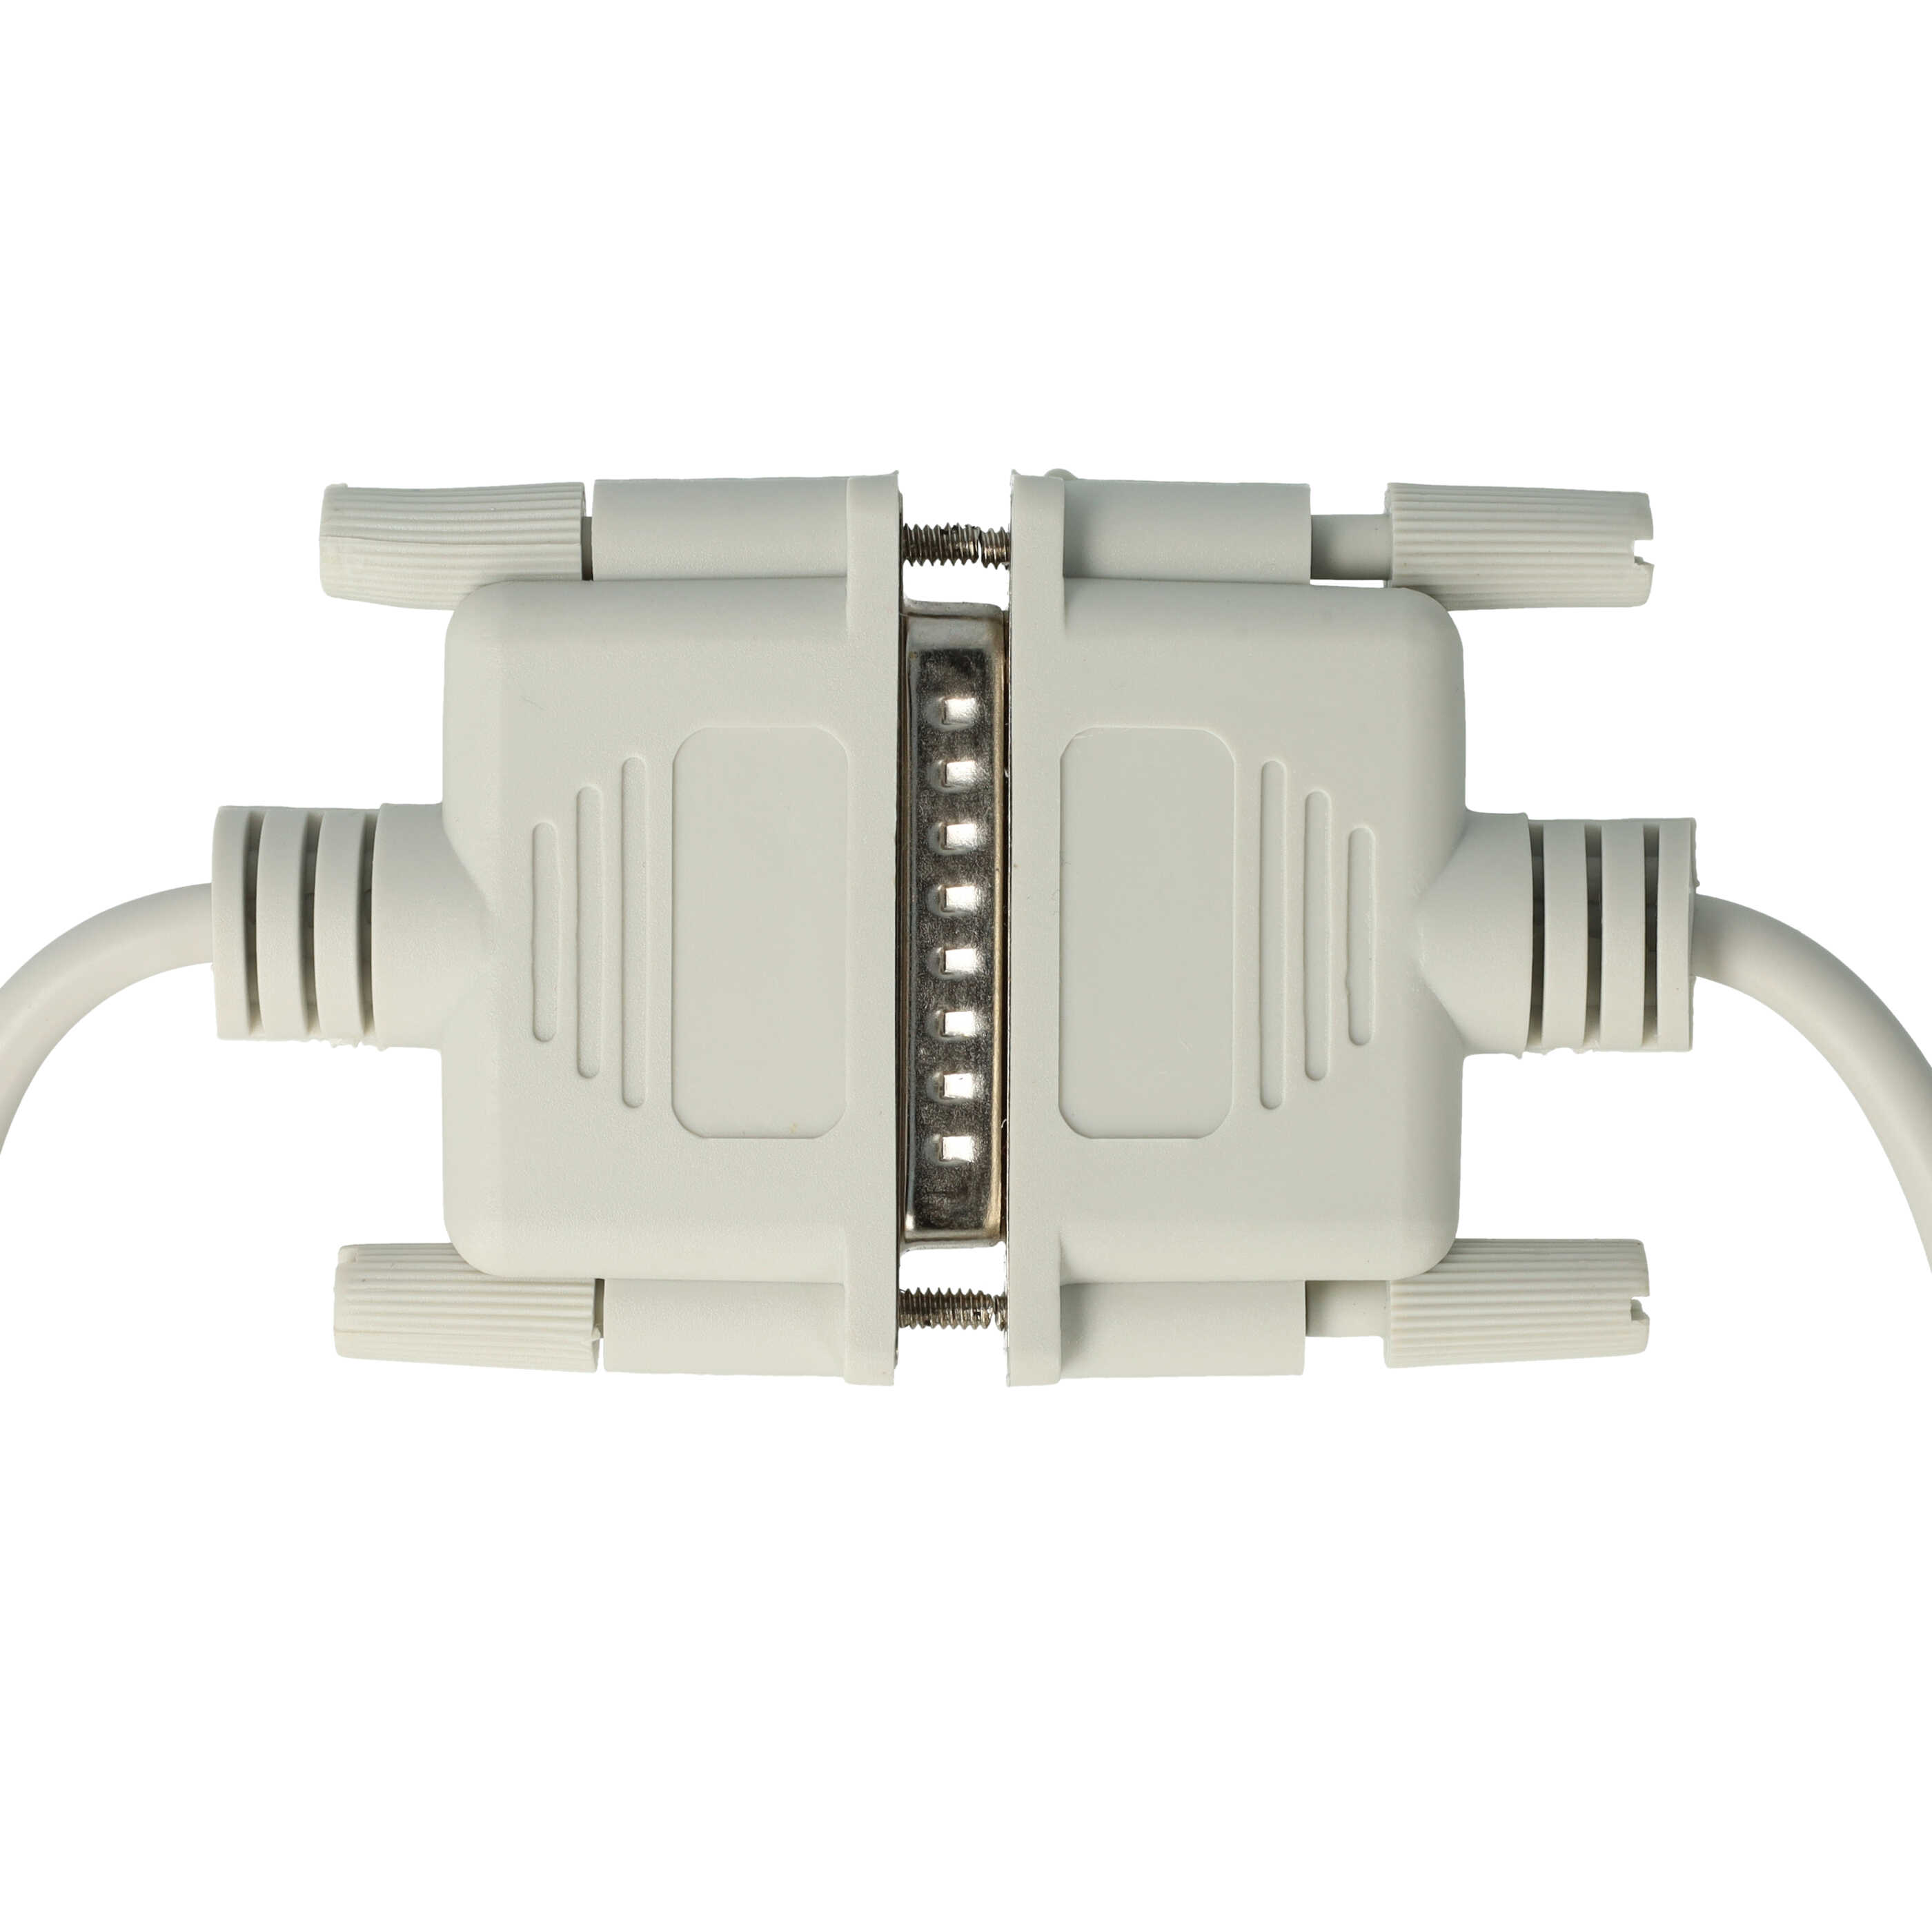 Cable programación RS-232 para dispositivo periférico Mitsubishi MELSEC FX - Adaptador 200cm gris